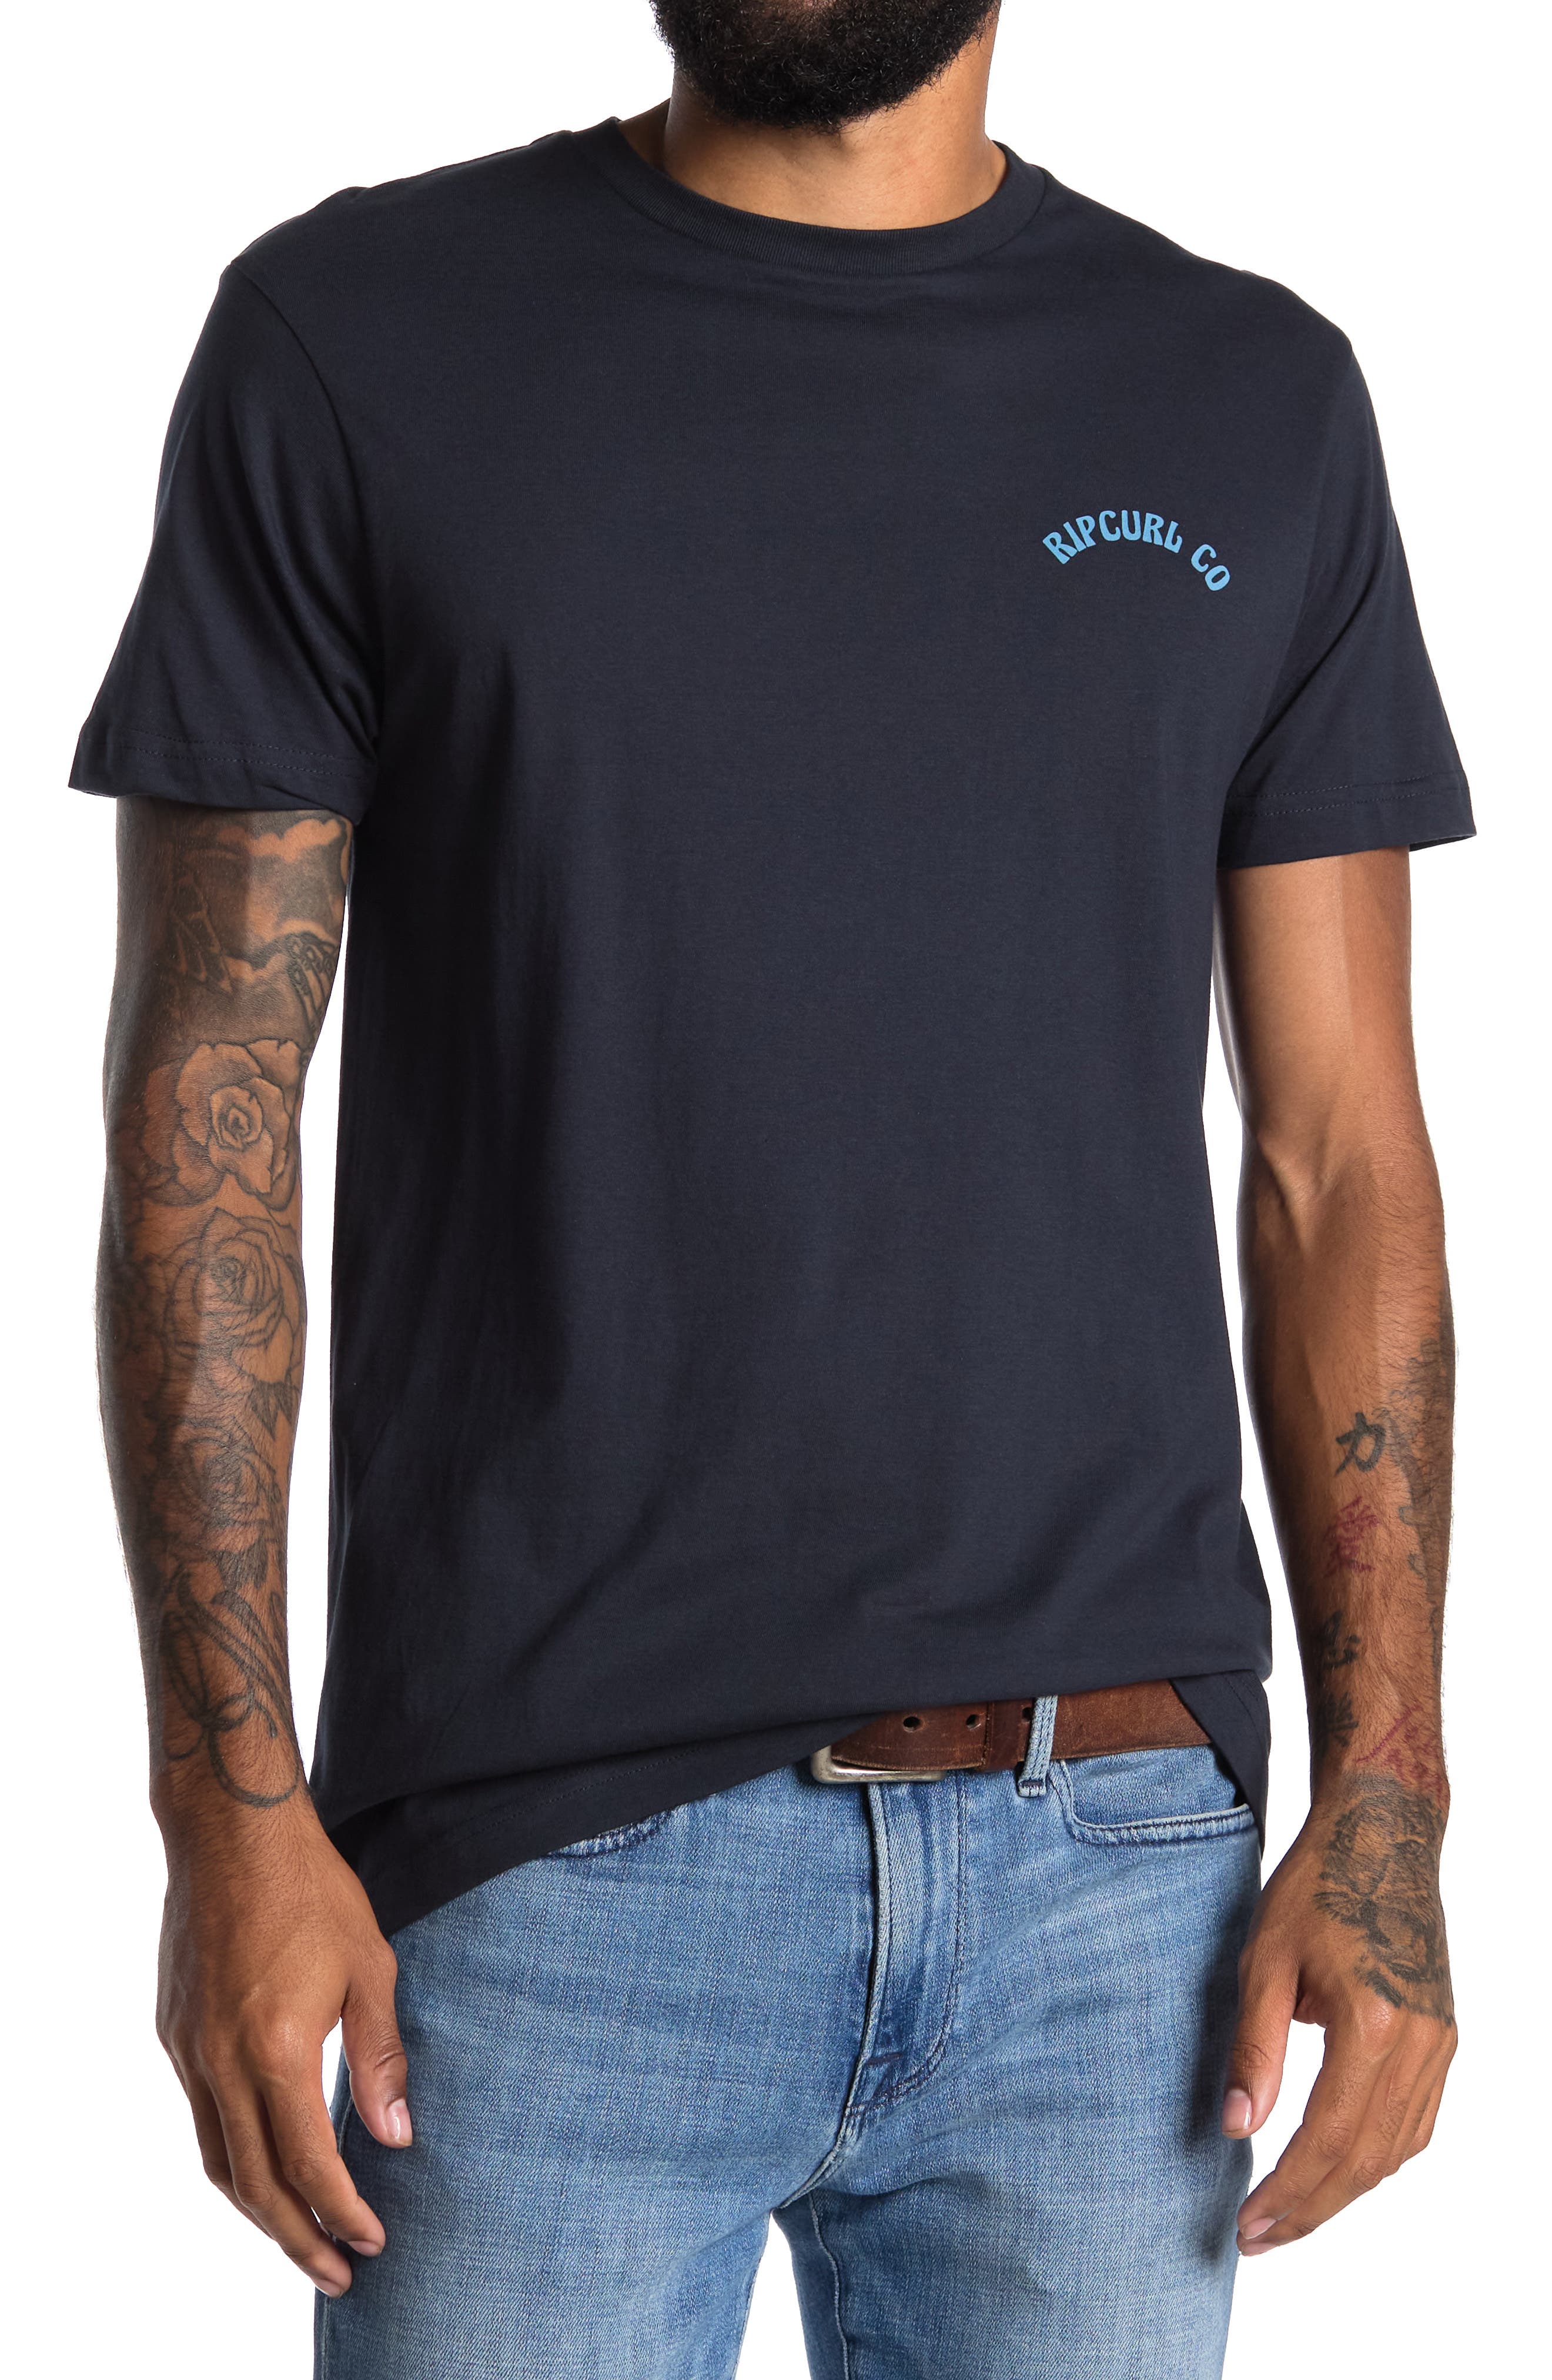 Derfra øverst Let at ske Men's RIP CURL T-Shirts On Sale, Up To 70% Off | ModeSens